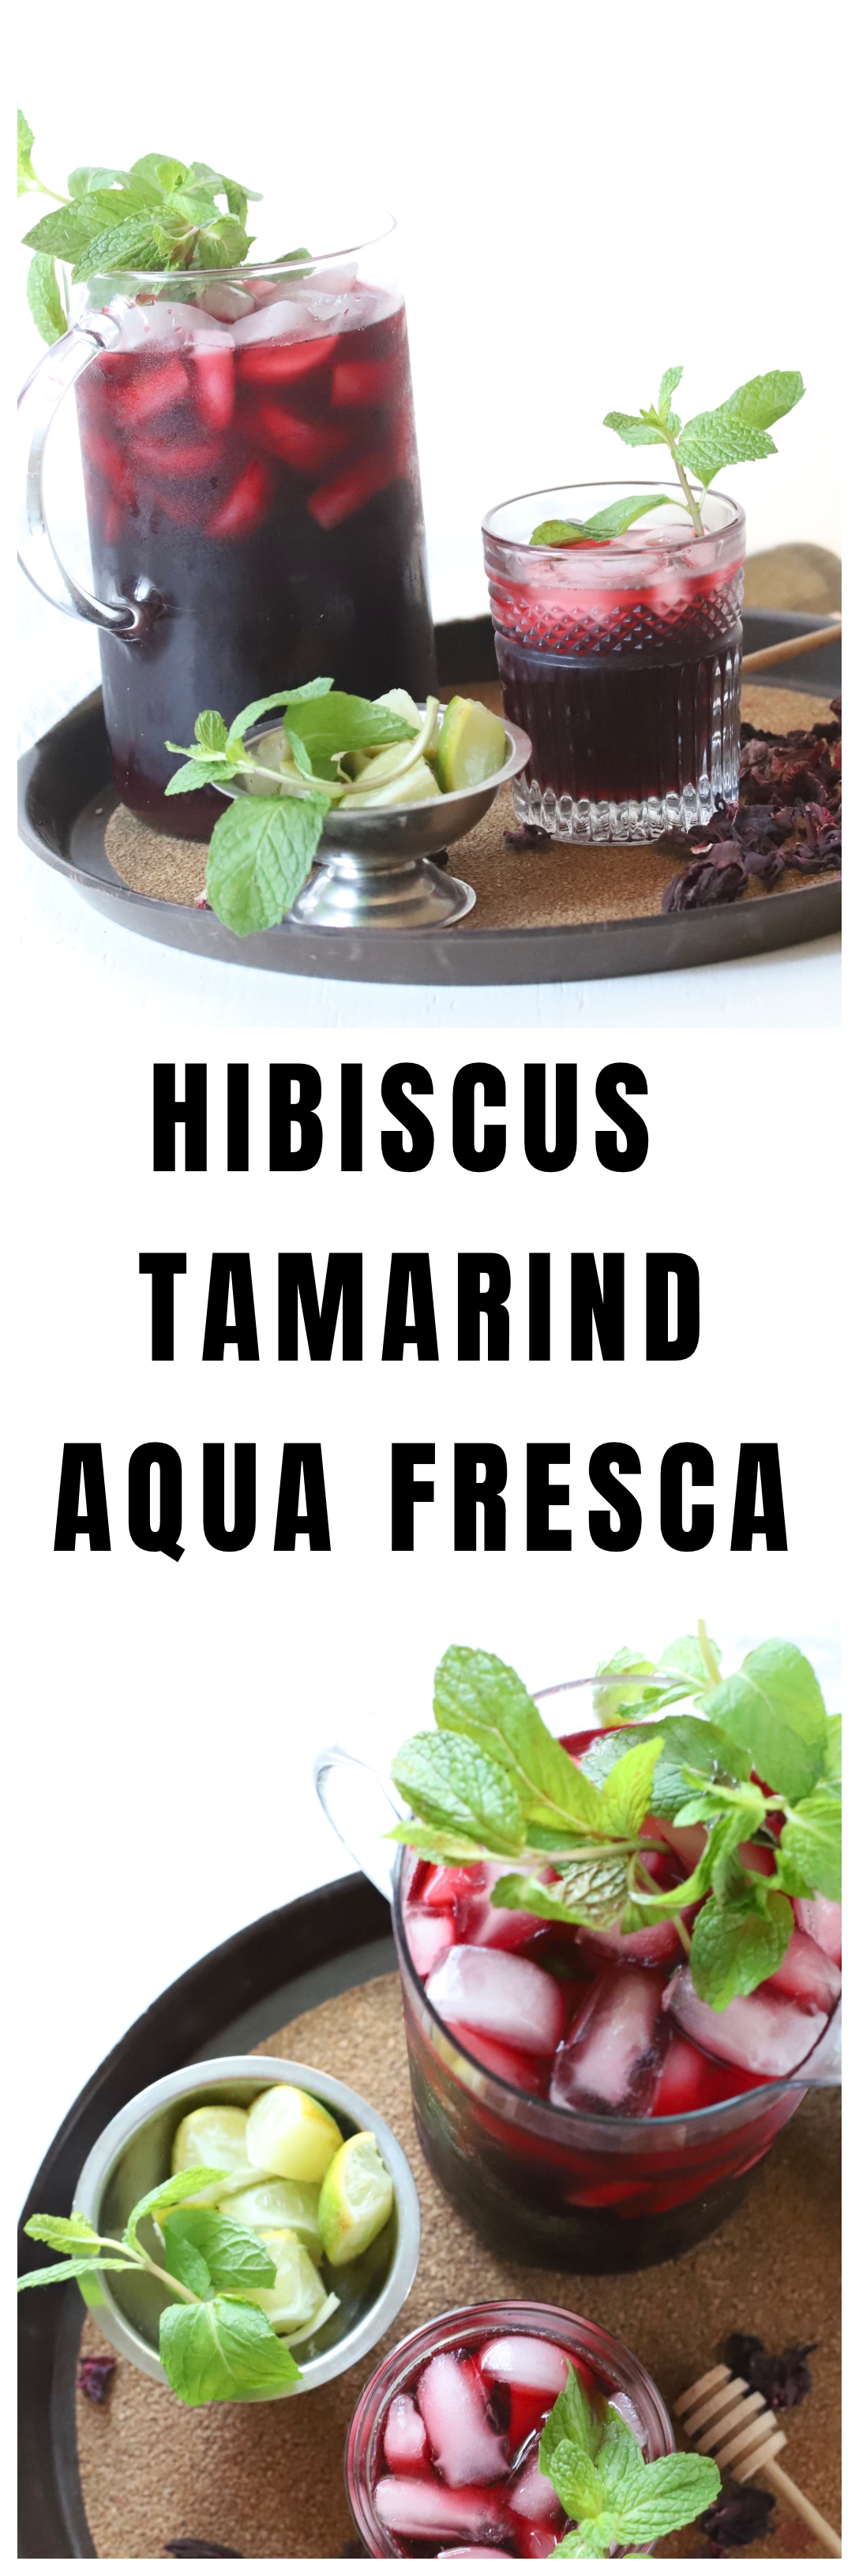 Hibiscus Tamarind Aqua Fresca